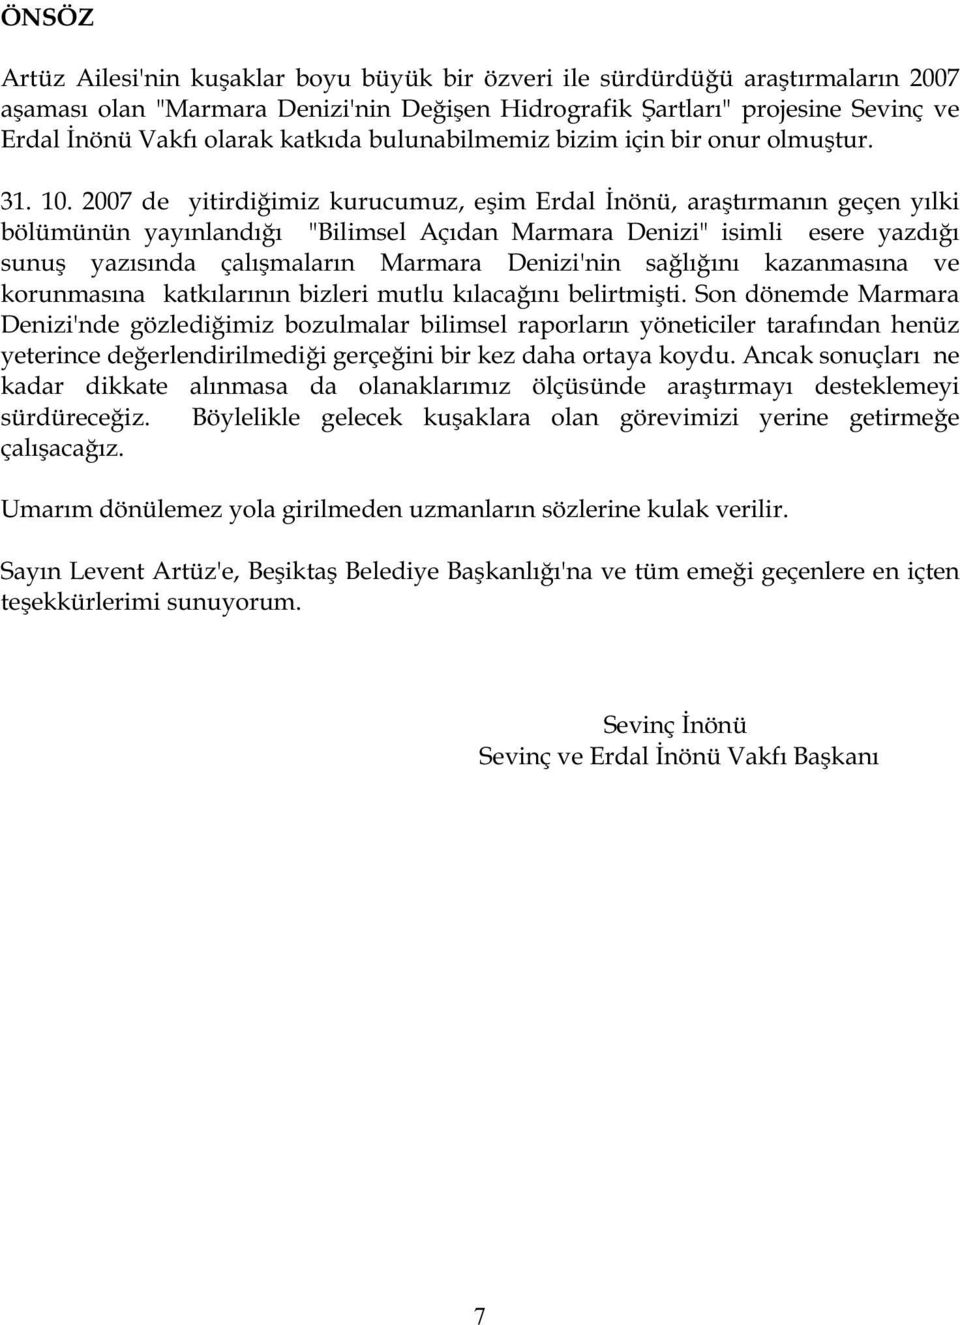 2007 de yitirdi imiz kurucumuz, e im Erdal nönü, ara tırmanın geçen yılki bölümünün yayınlandı ı "Bilimsel Açıdan Marmara Denizi" isimli esere yazdı ı sunu yazısında çalı maların Marmara Denizi'nin